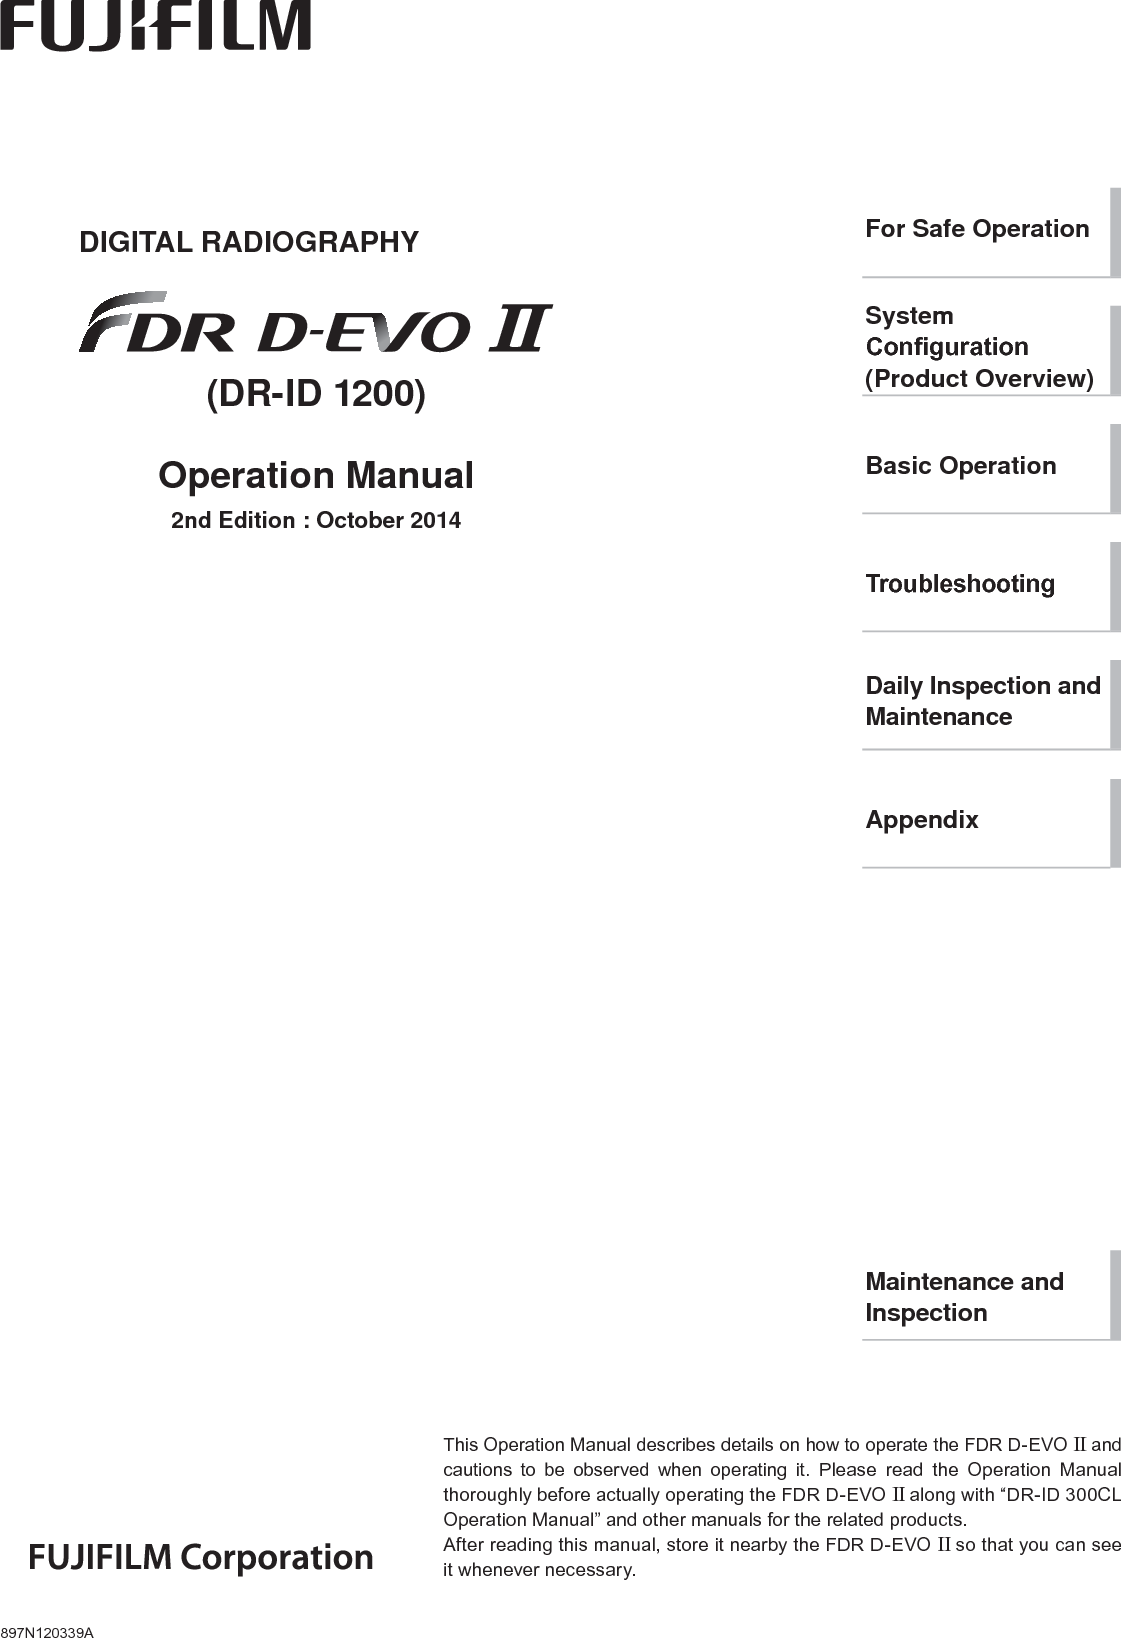 ii FDR D-EVO II Operation Manual    897N120339A